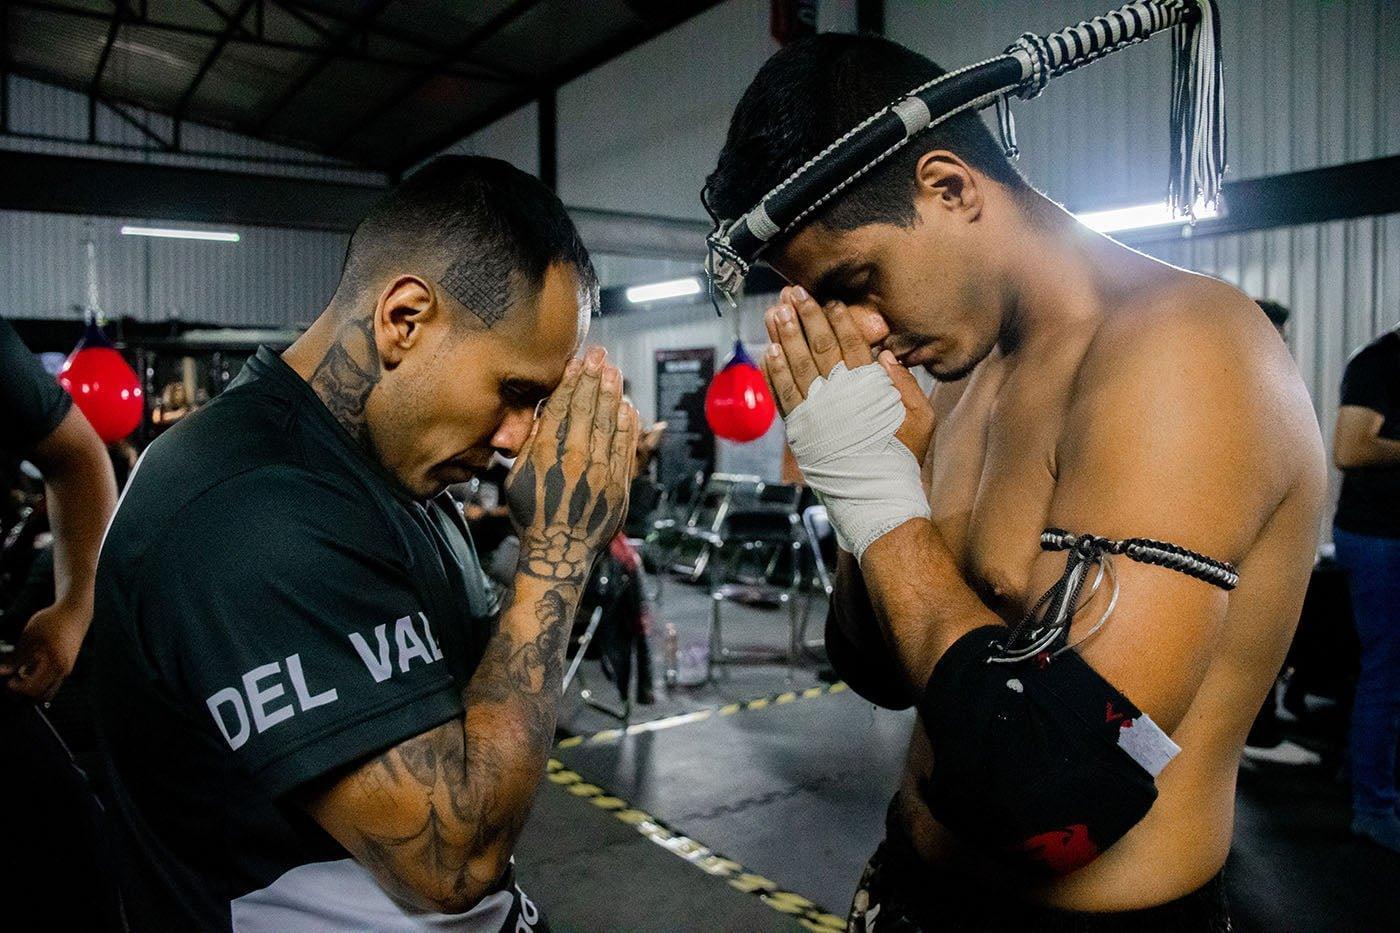 Guantes Kick Boxing, Muay Thai, Morales, Artes Marciales Mixtas